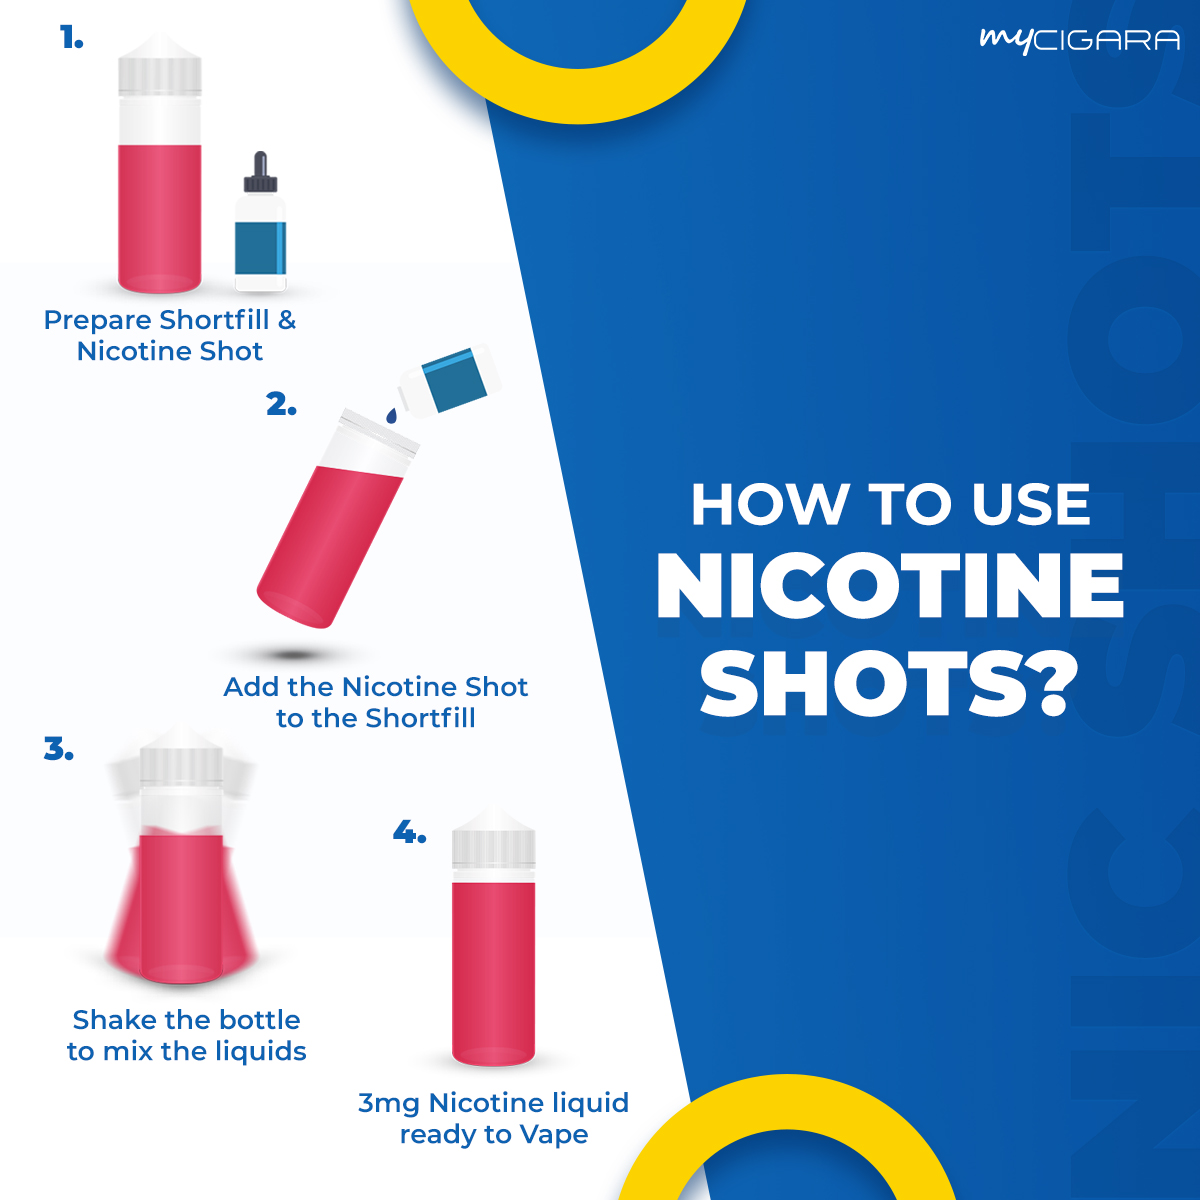 How to Use Nicotine Shots?